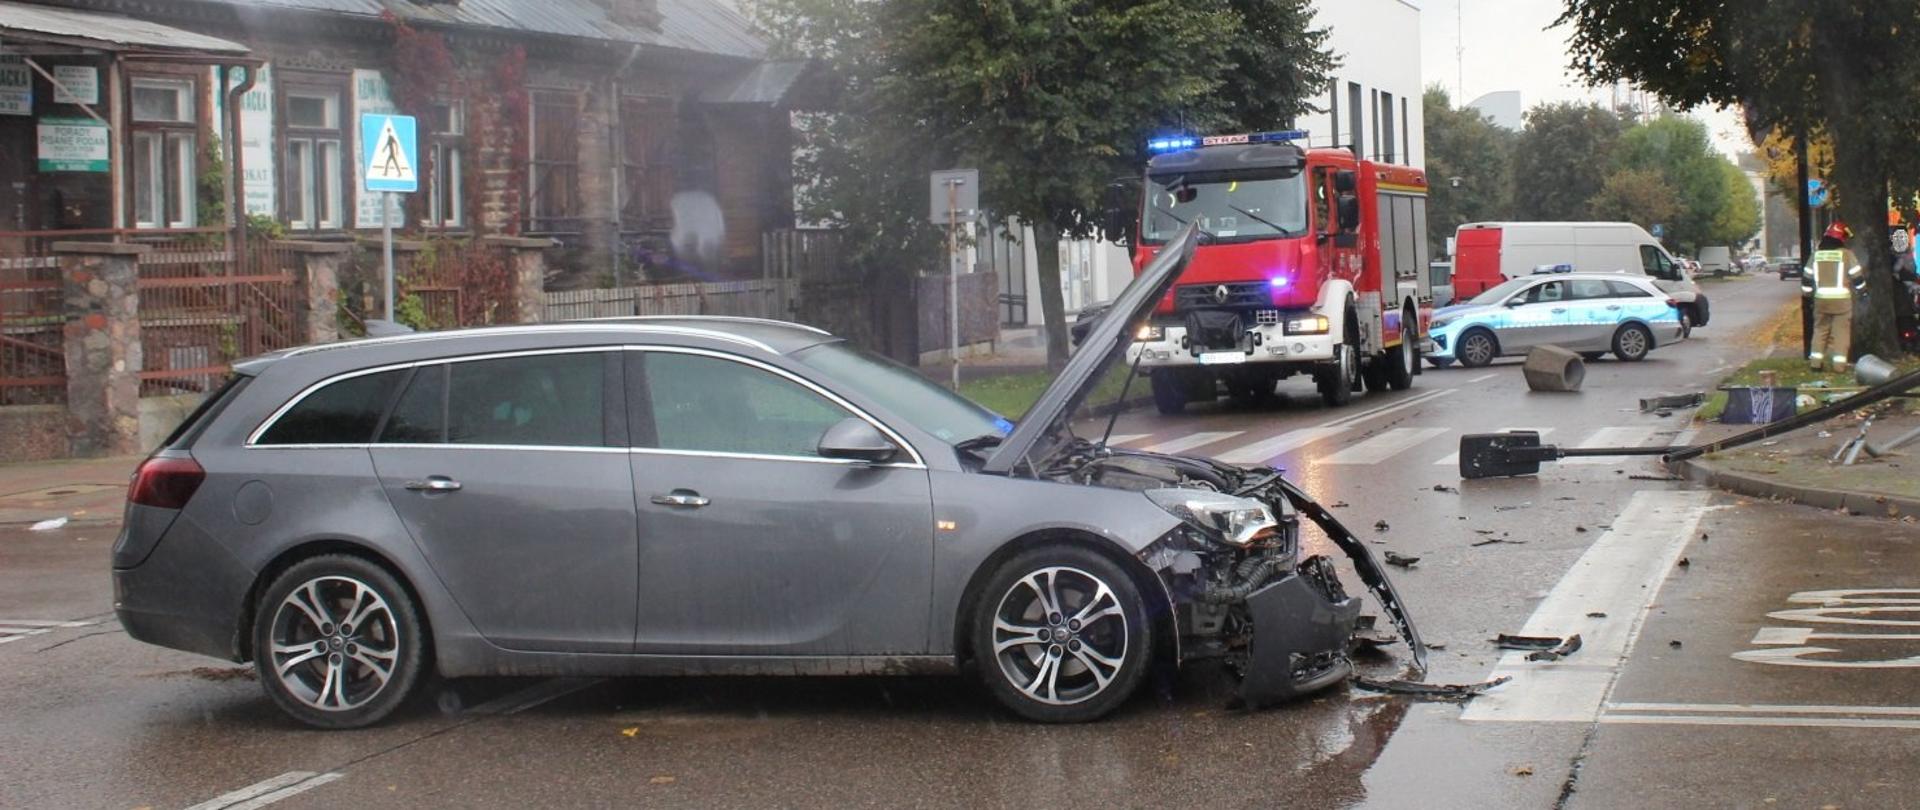 Samochód osobowy marki Audi stojący na środku skrzyżowania po zderzeniu z inny pojazdem. Samochód ma uszkodzony przód. W tle samochód ratowniczo-gaśniczy. Na jezdni leży wywrócony betonowy kosz na śmieci oraz złamana latarnia.